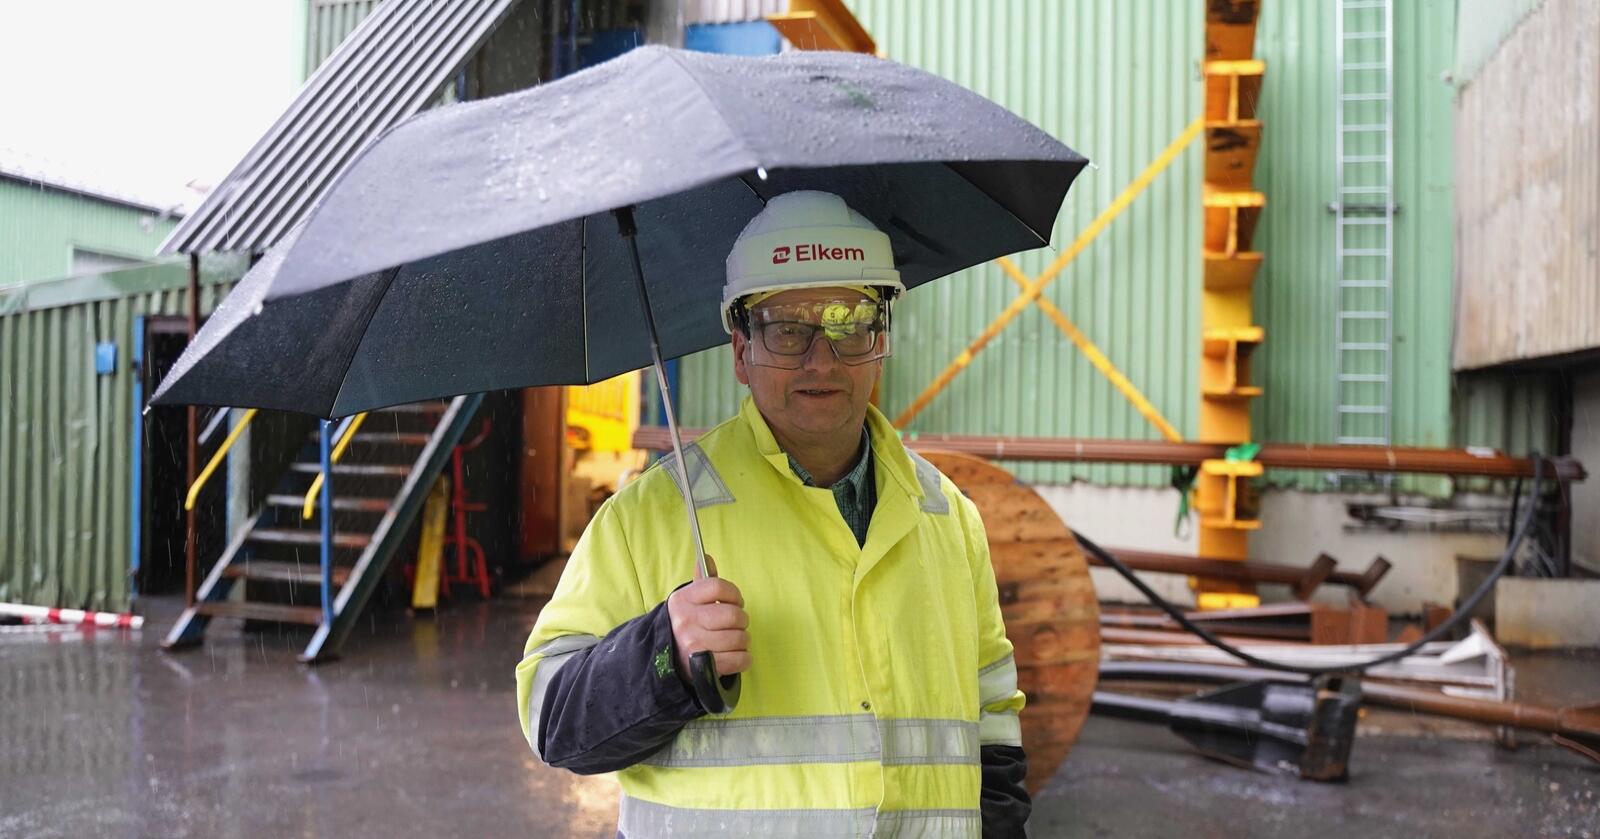 Det blir ingen stor industrisatsing uten vindkraft, ifølge selskapet som vil etablere seg i Salten. – Man har jo blandede følelser, sier ordfører Gisle Hansen (Sp). Foto: Andrea Ånestad